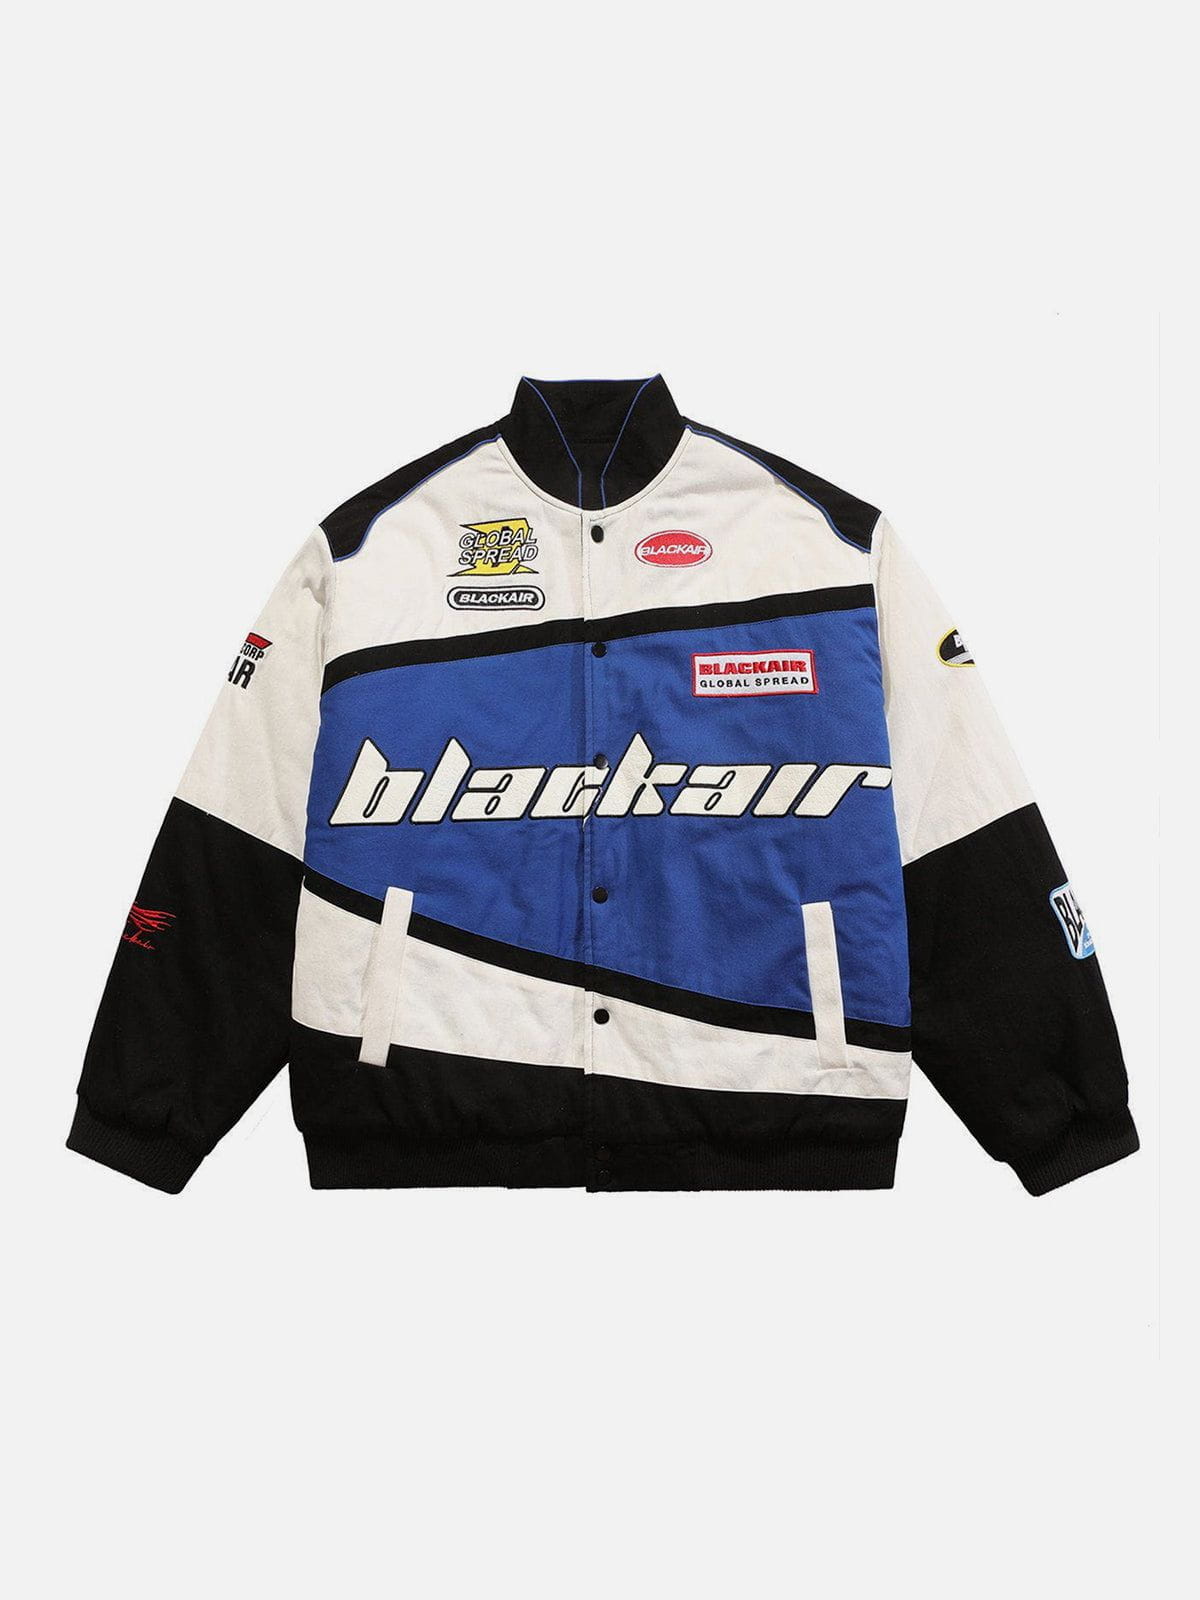 BLACKAIR Motosports Jacket